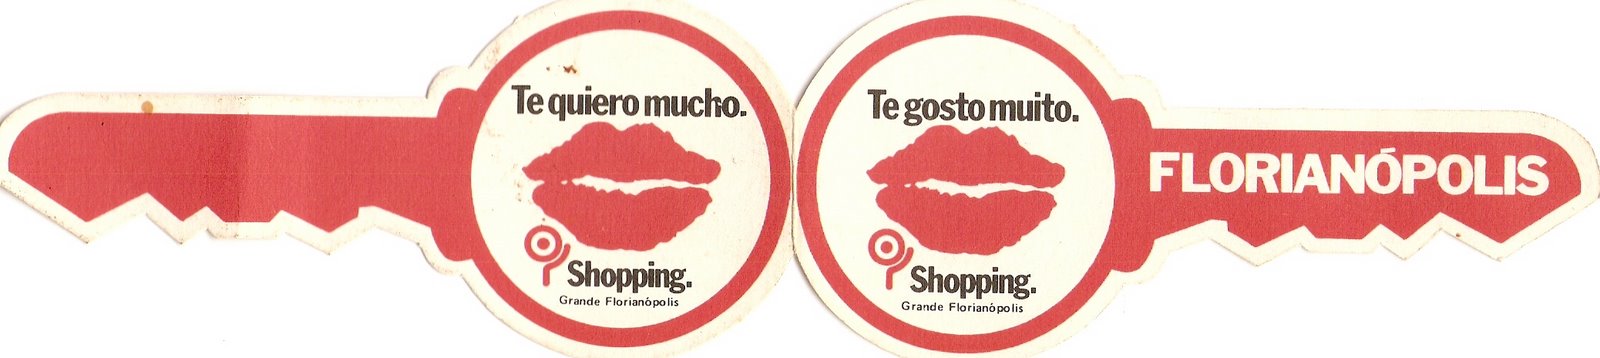 [Folder+Shopping+Sao+Jose+1985.jpg]